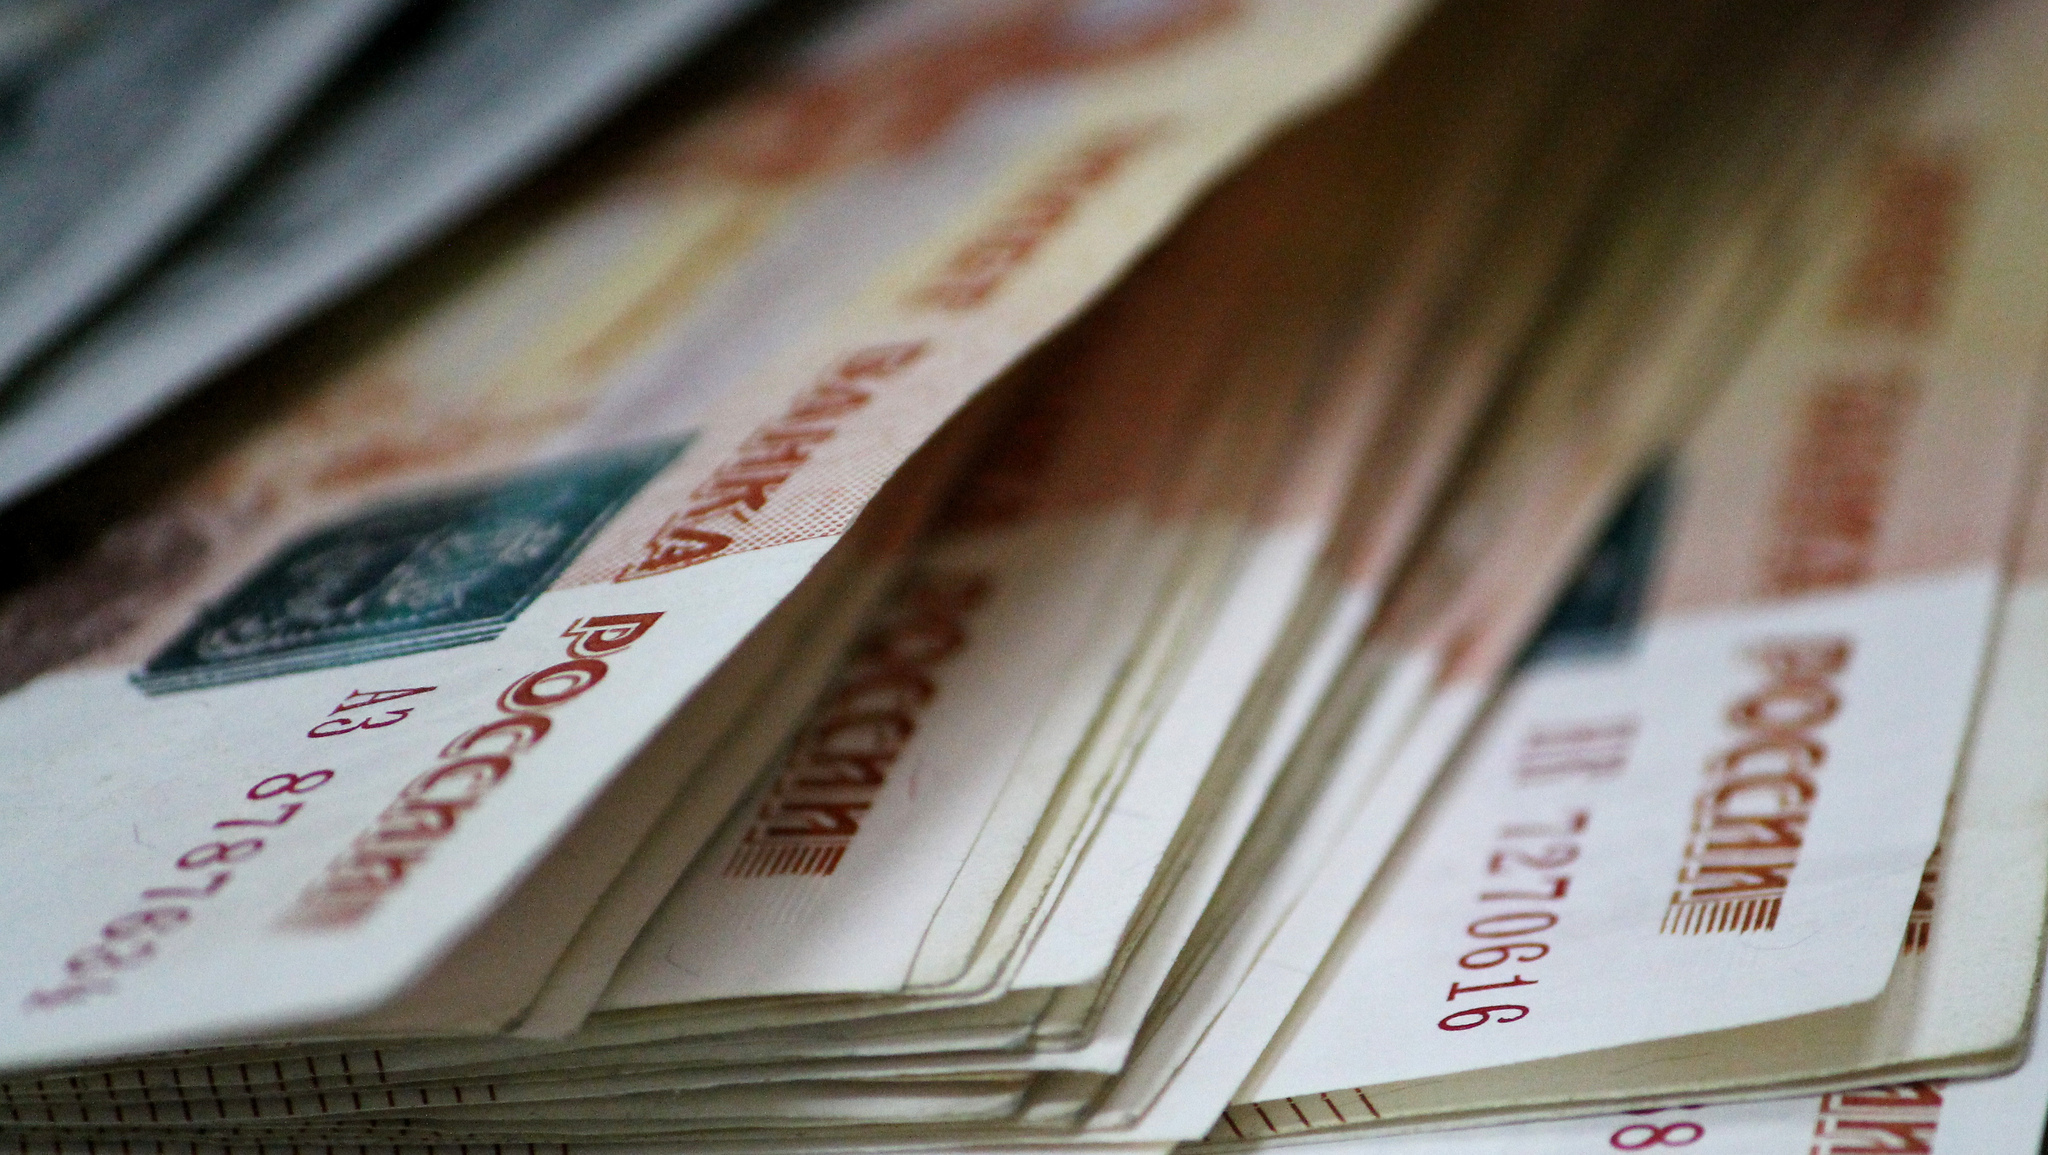 В Омске «бизнесмен» оставил пенсионерке на хранение пачку игрушечных денег